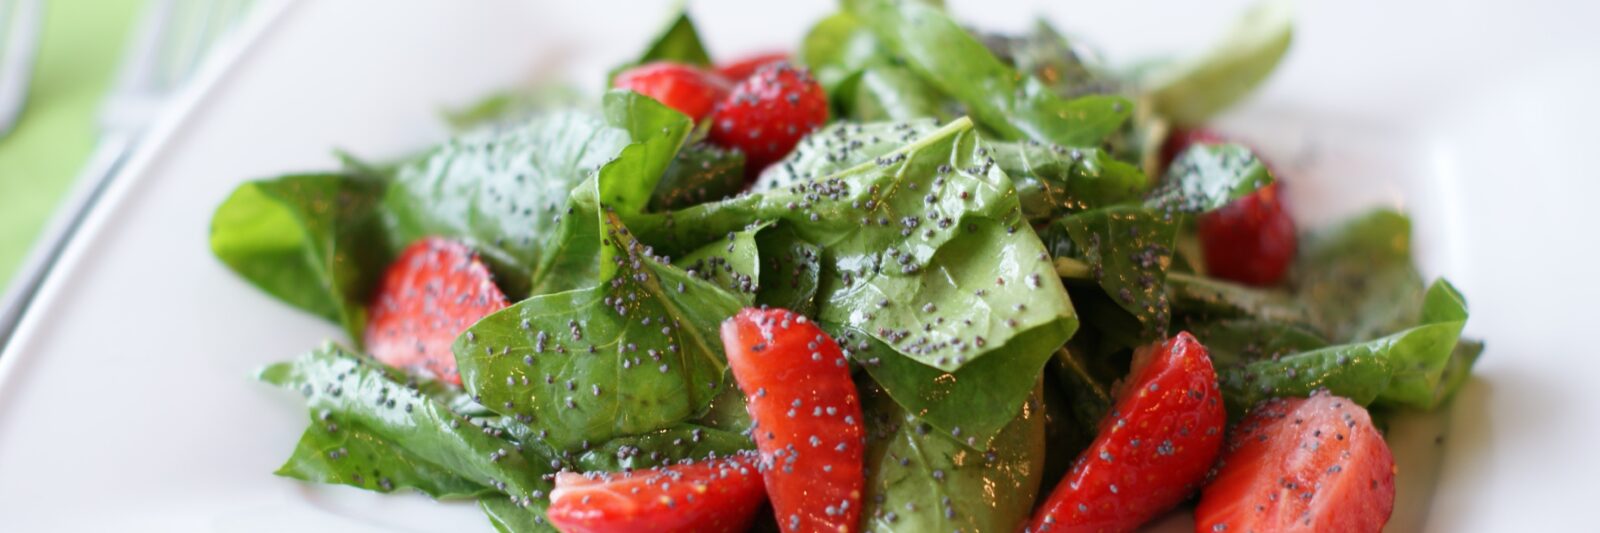 A Quick & Easy Delicious Summer Salad